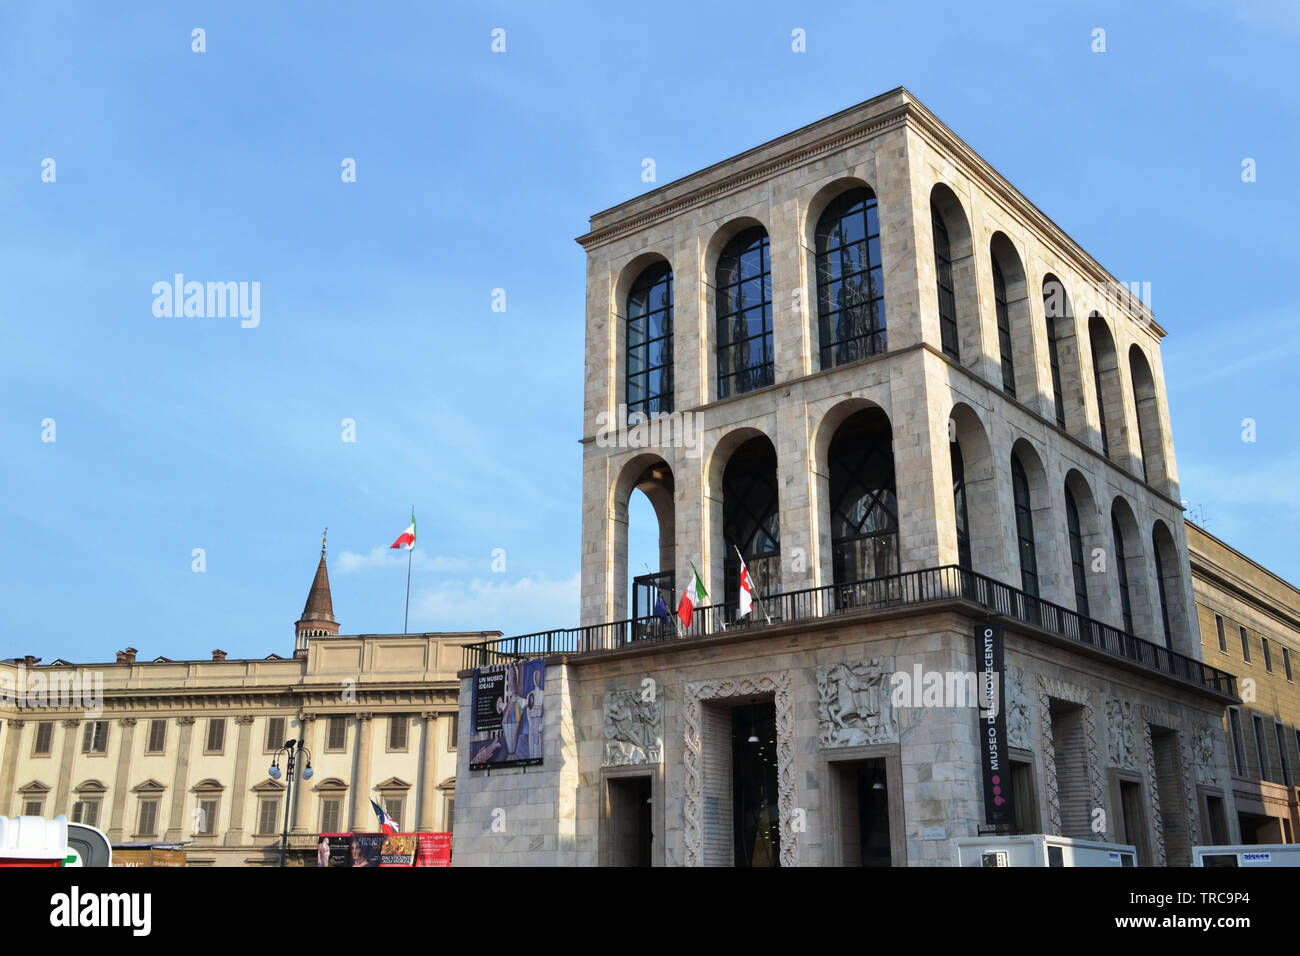 Milan/Italia - Junio 1, 2015: Vista del Palacio Real y el museo del siglo XIX en la plaza del Duomo, en un día soleado de verano. Foto de stock